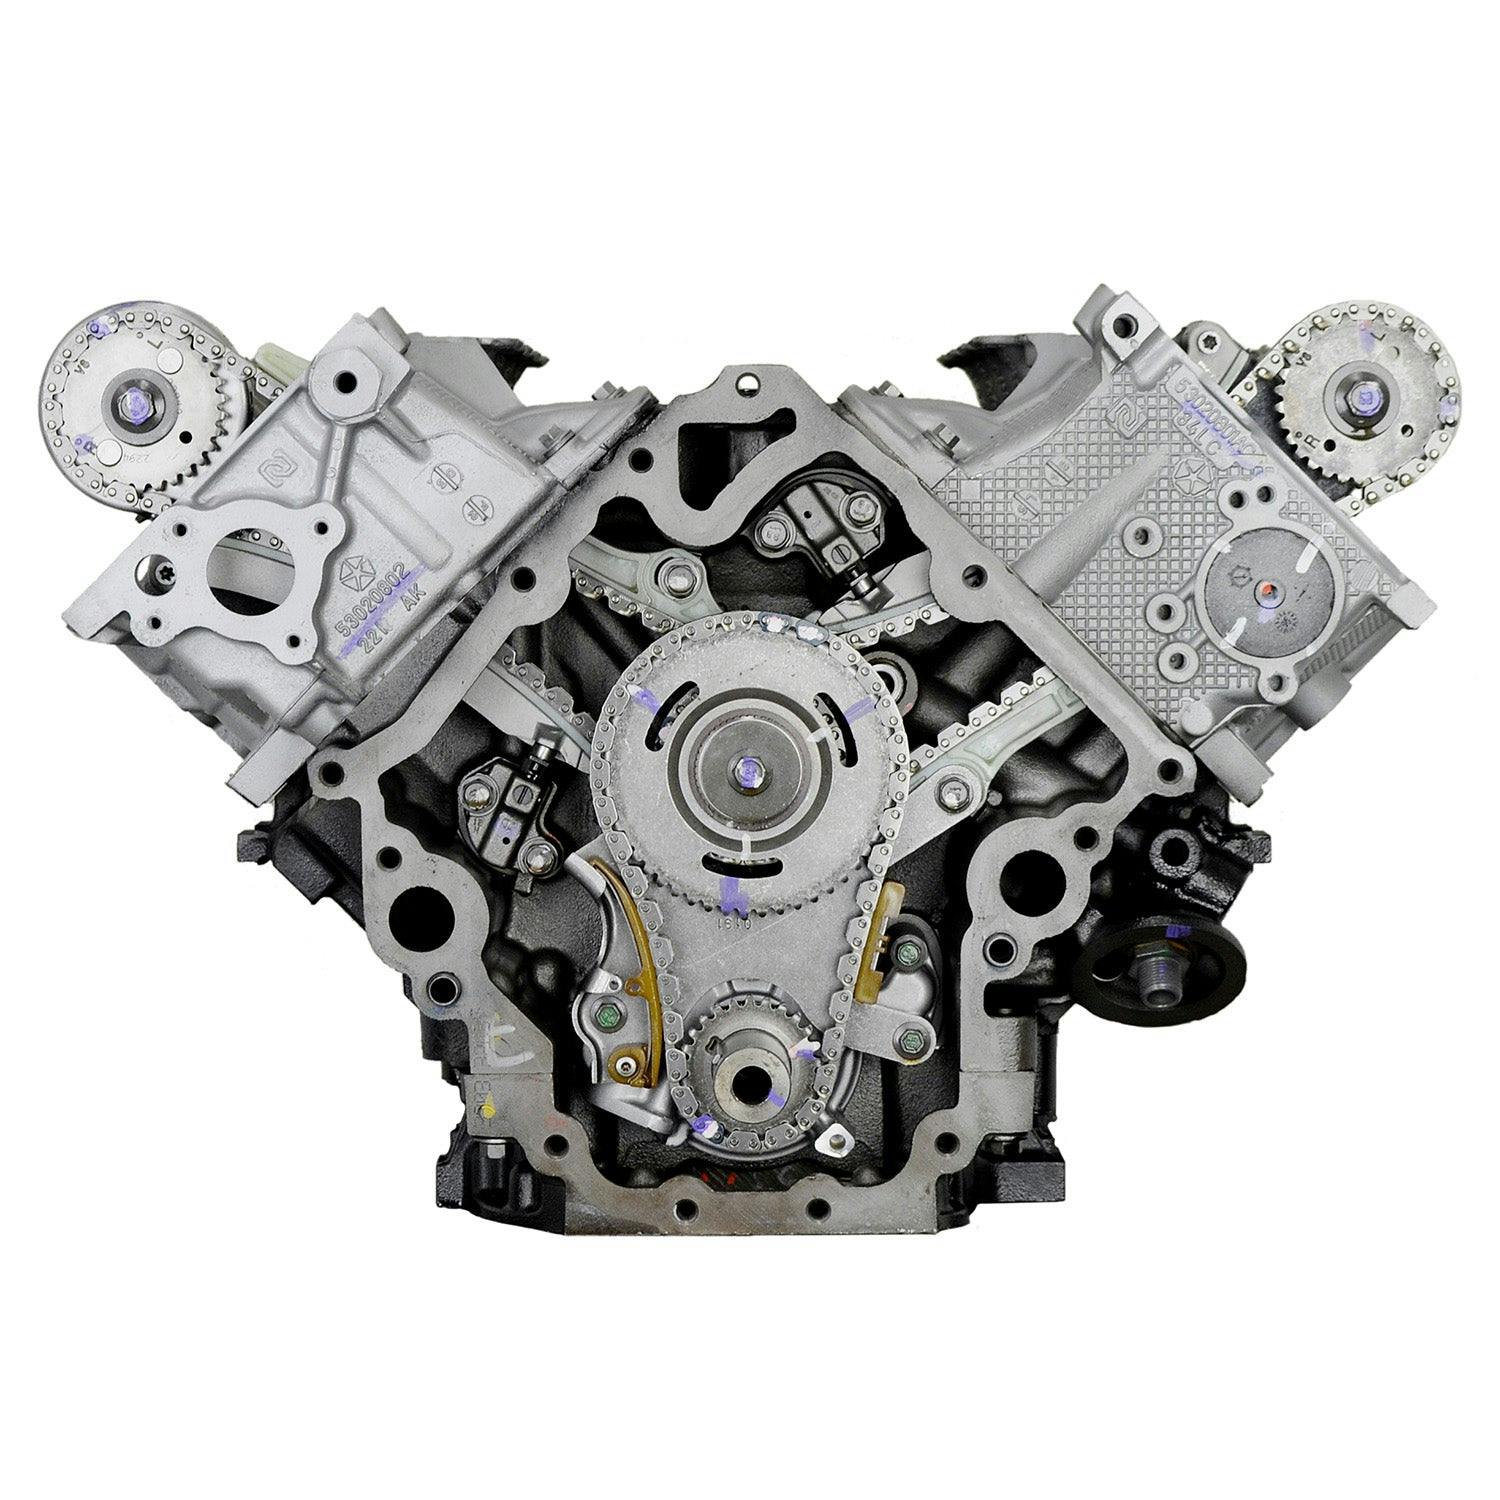 4.7L V8 Engine for 2003-2007 Chrysler Aspen/Dodge Dakota, Durango, Ram 1500/Jeep Commander, Grand Cherokee/Mitsubishi Raider 4WD